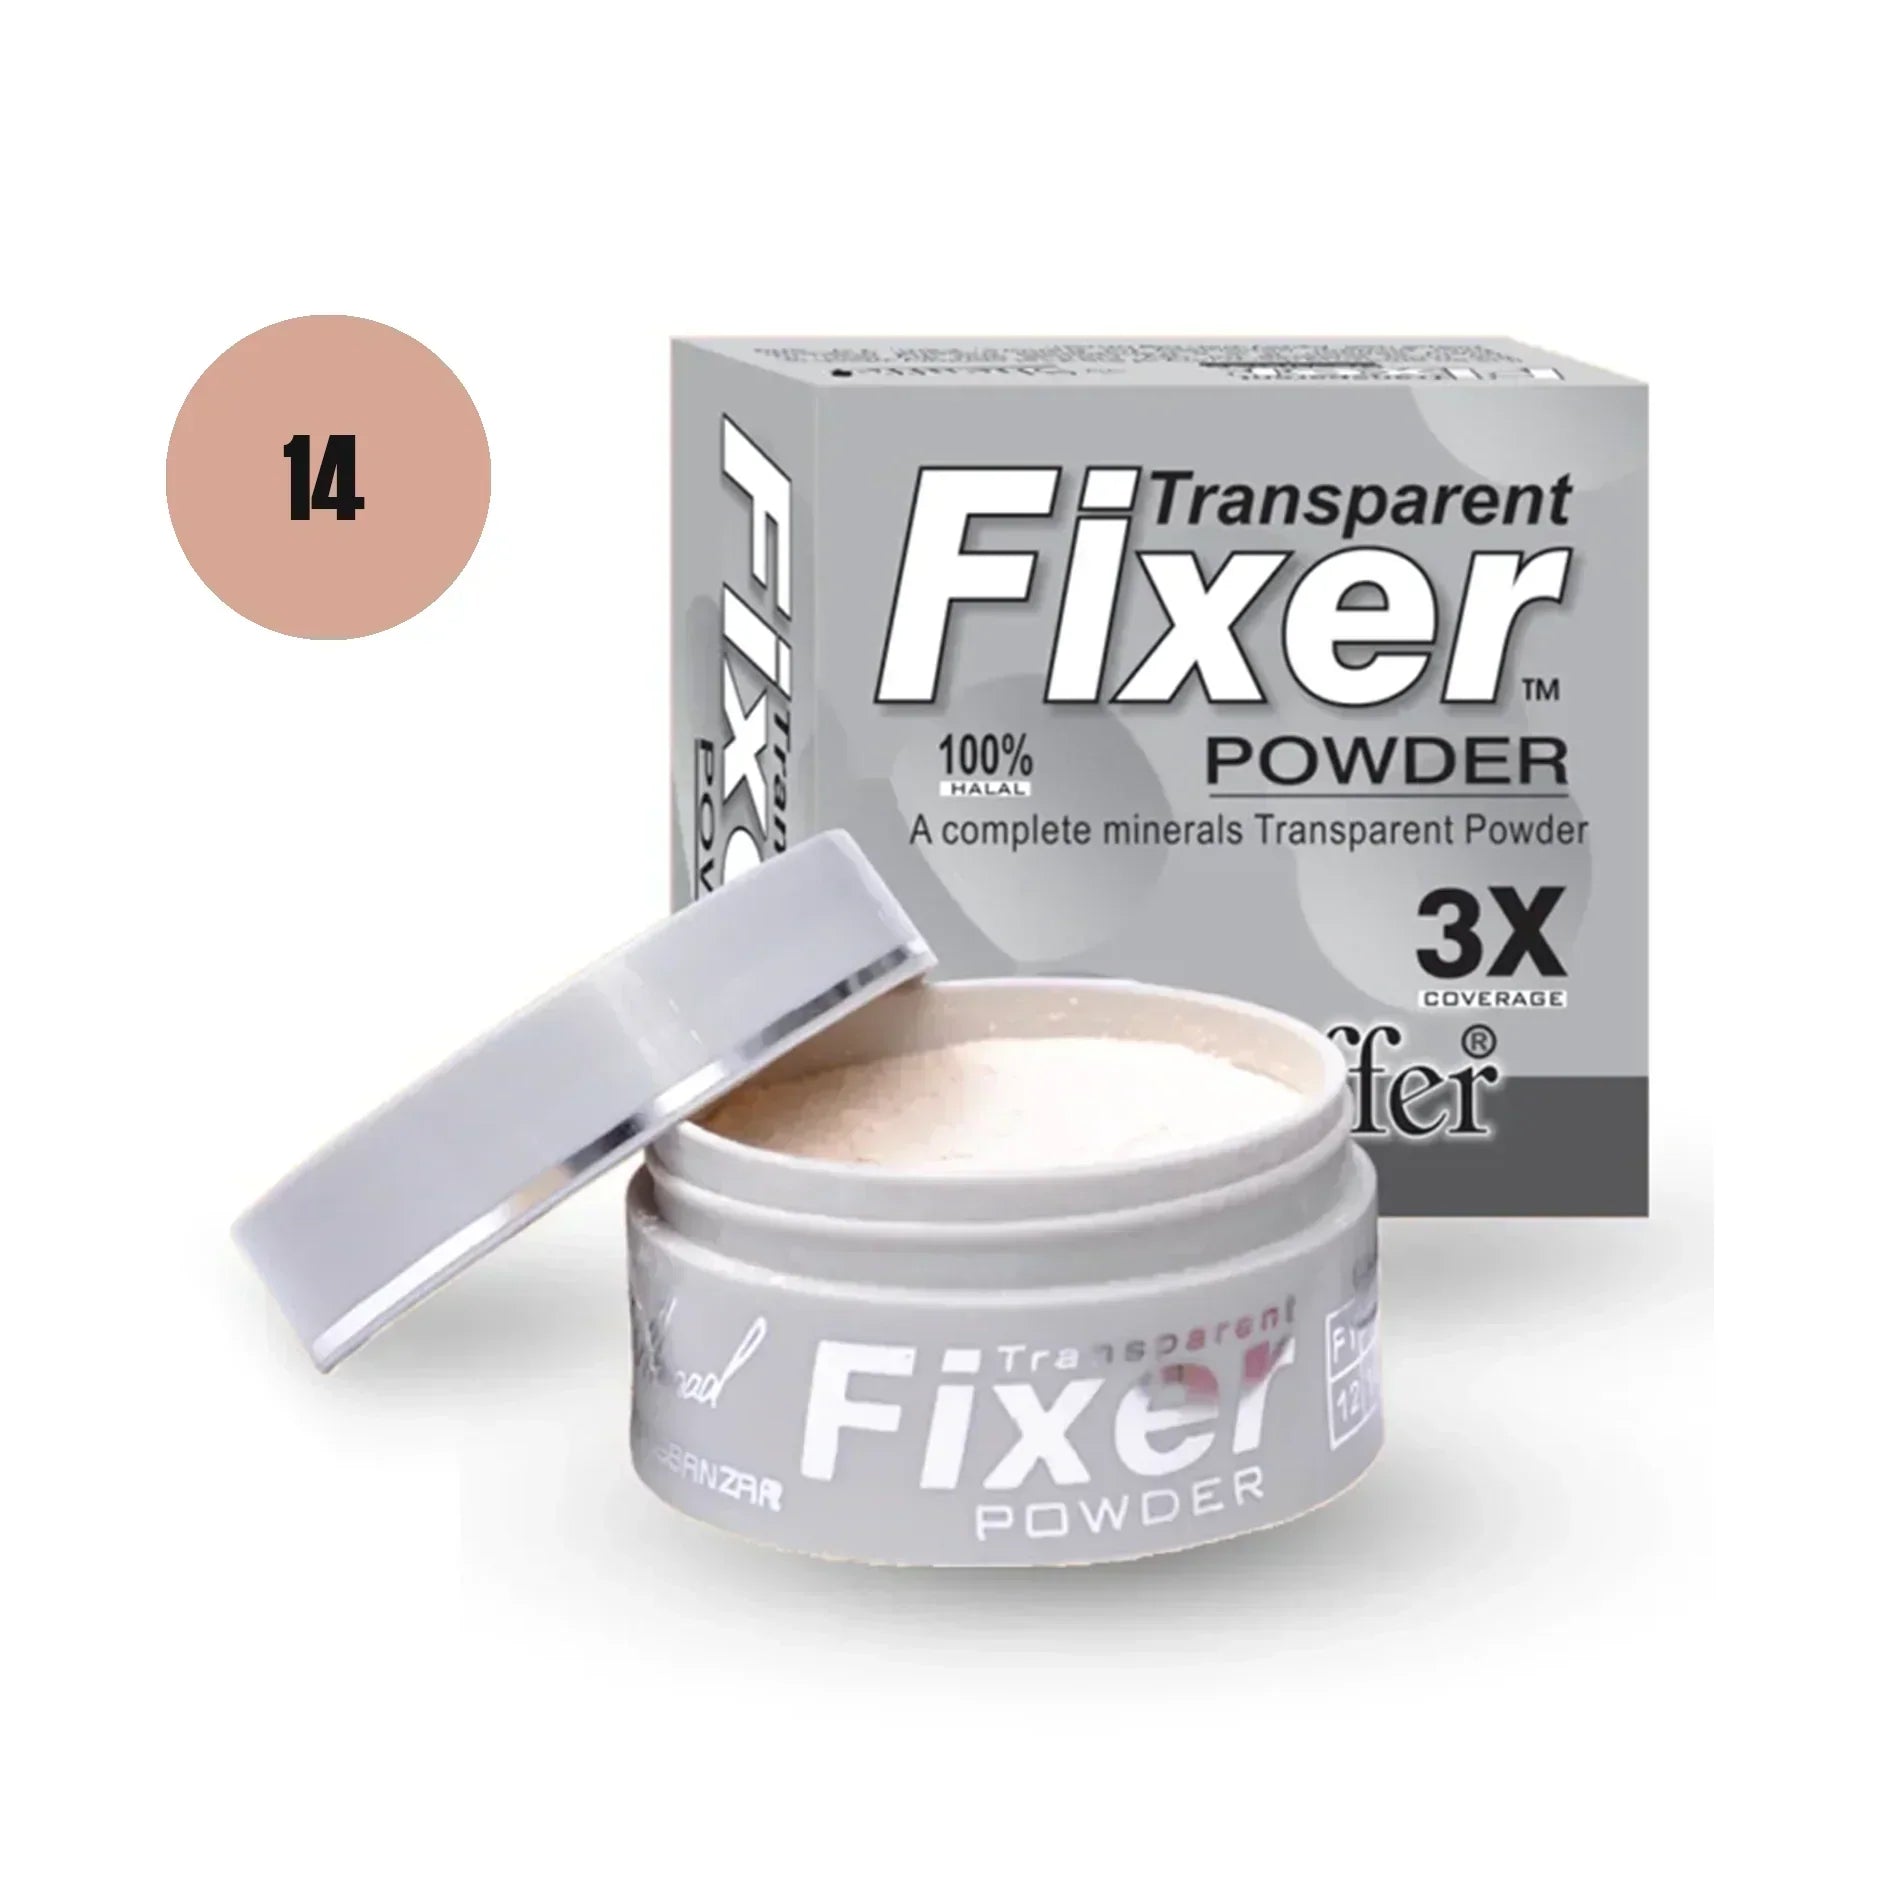 Sheaffer Transparent Fixer Powder Shade No 16 - Retailershop - Online Shopping Center